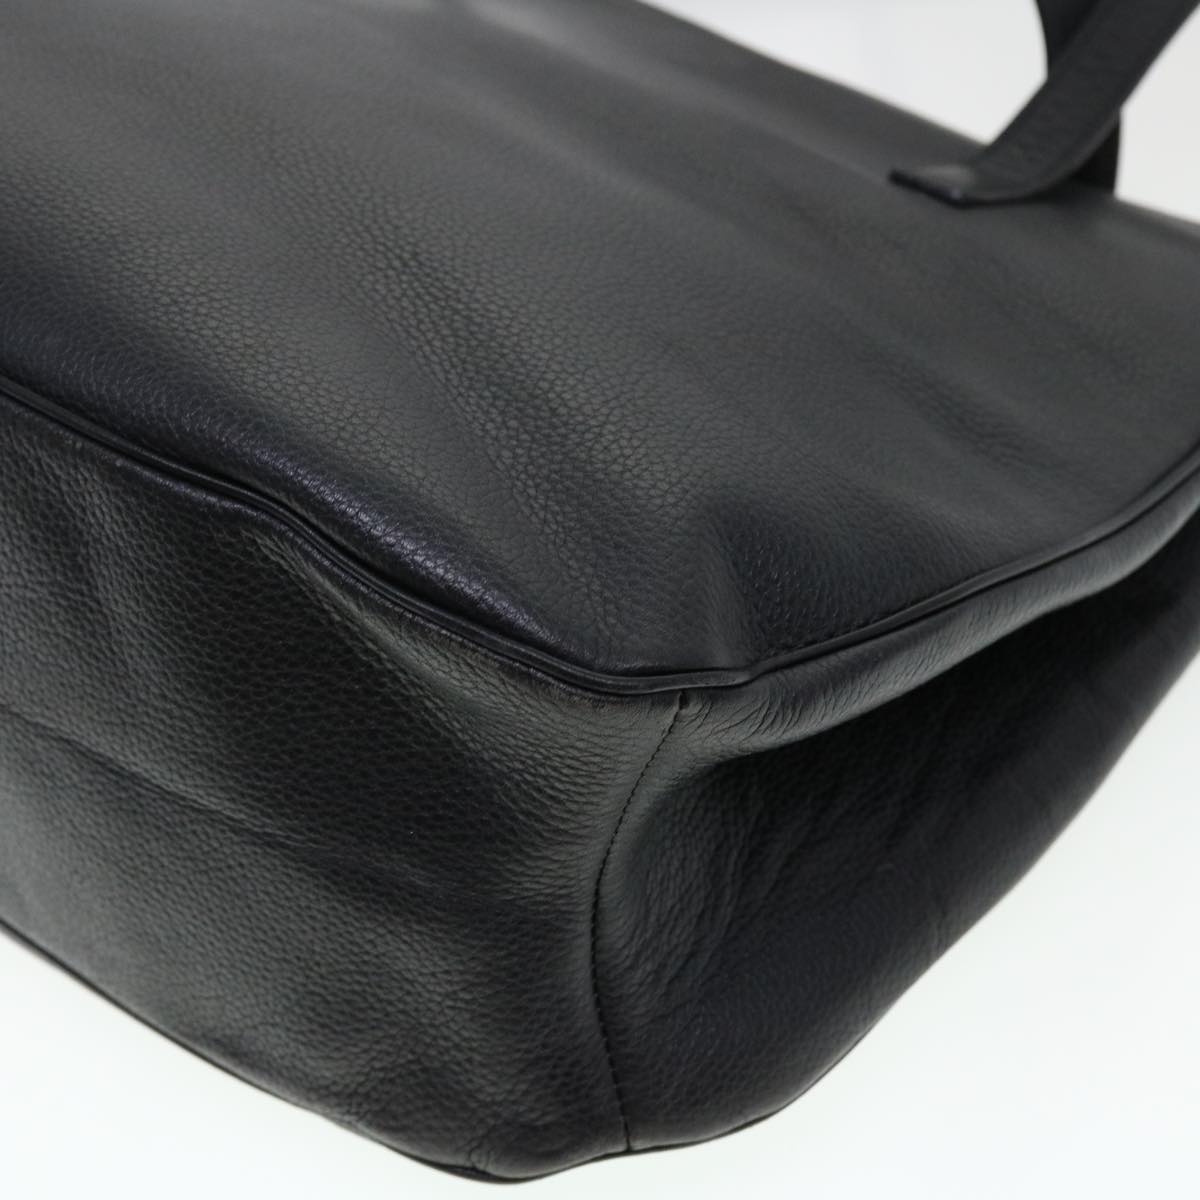 CELINE Shoulder Bag Leather Black Auth fm2285